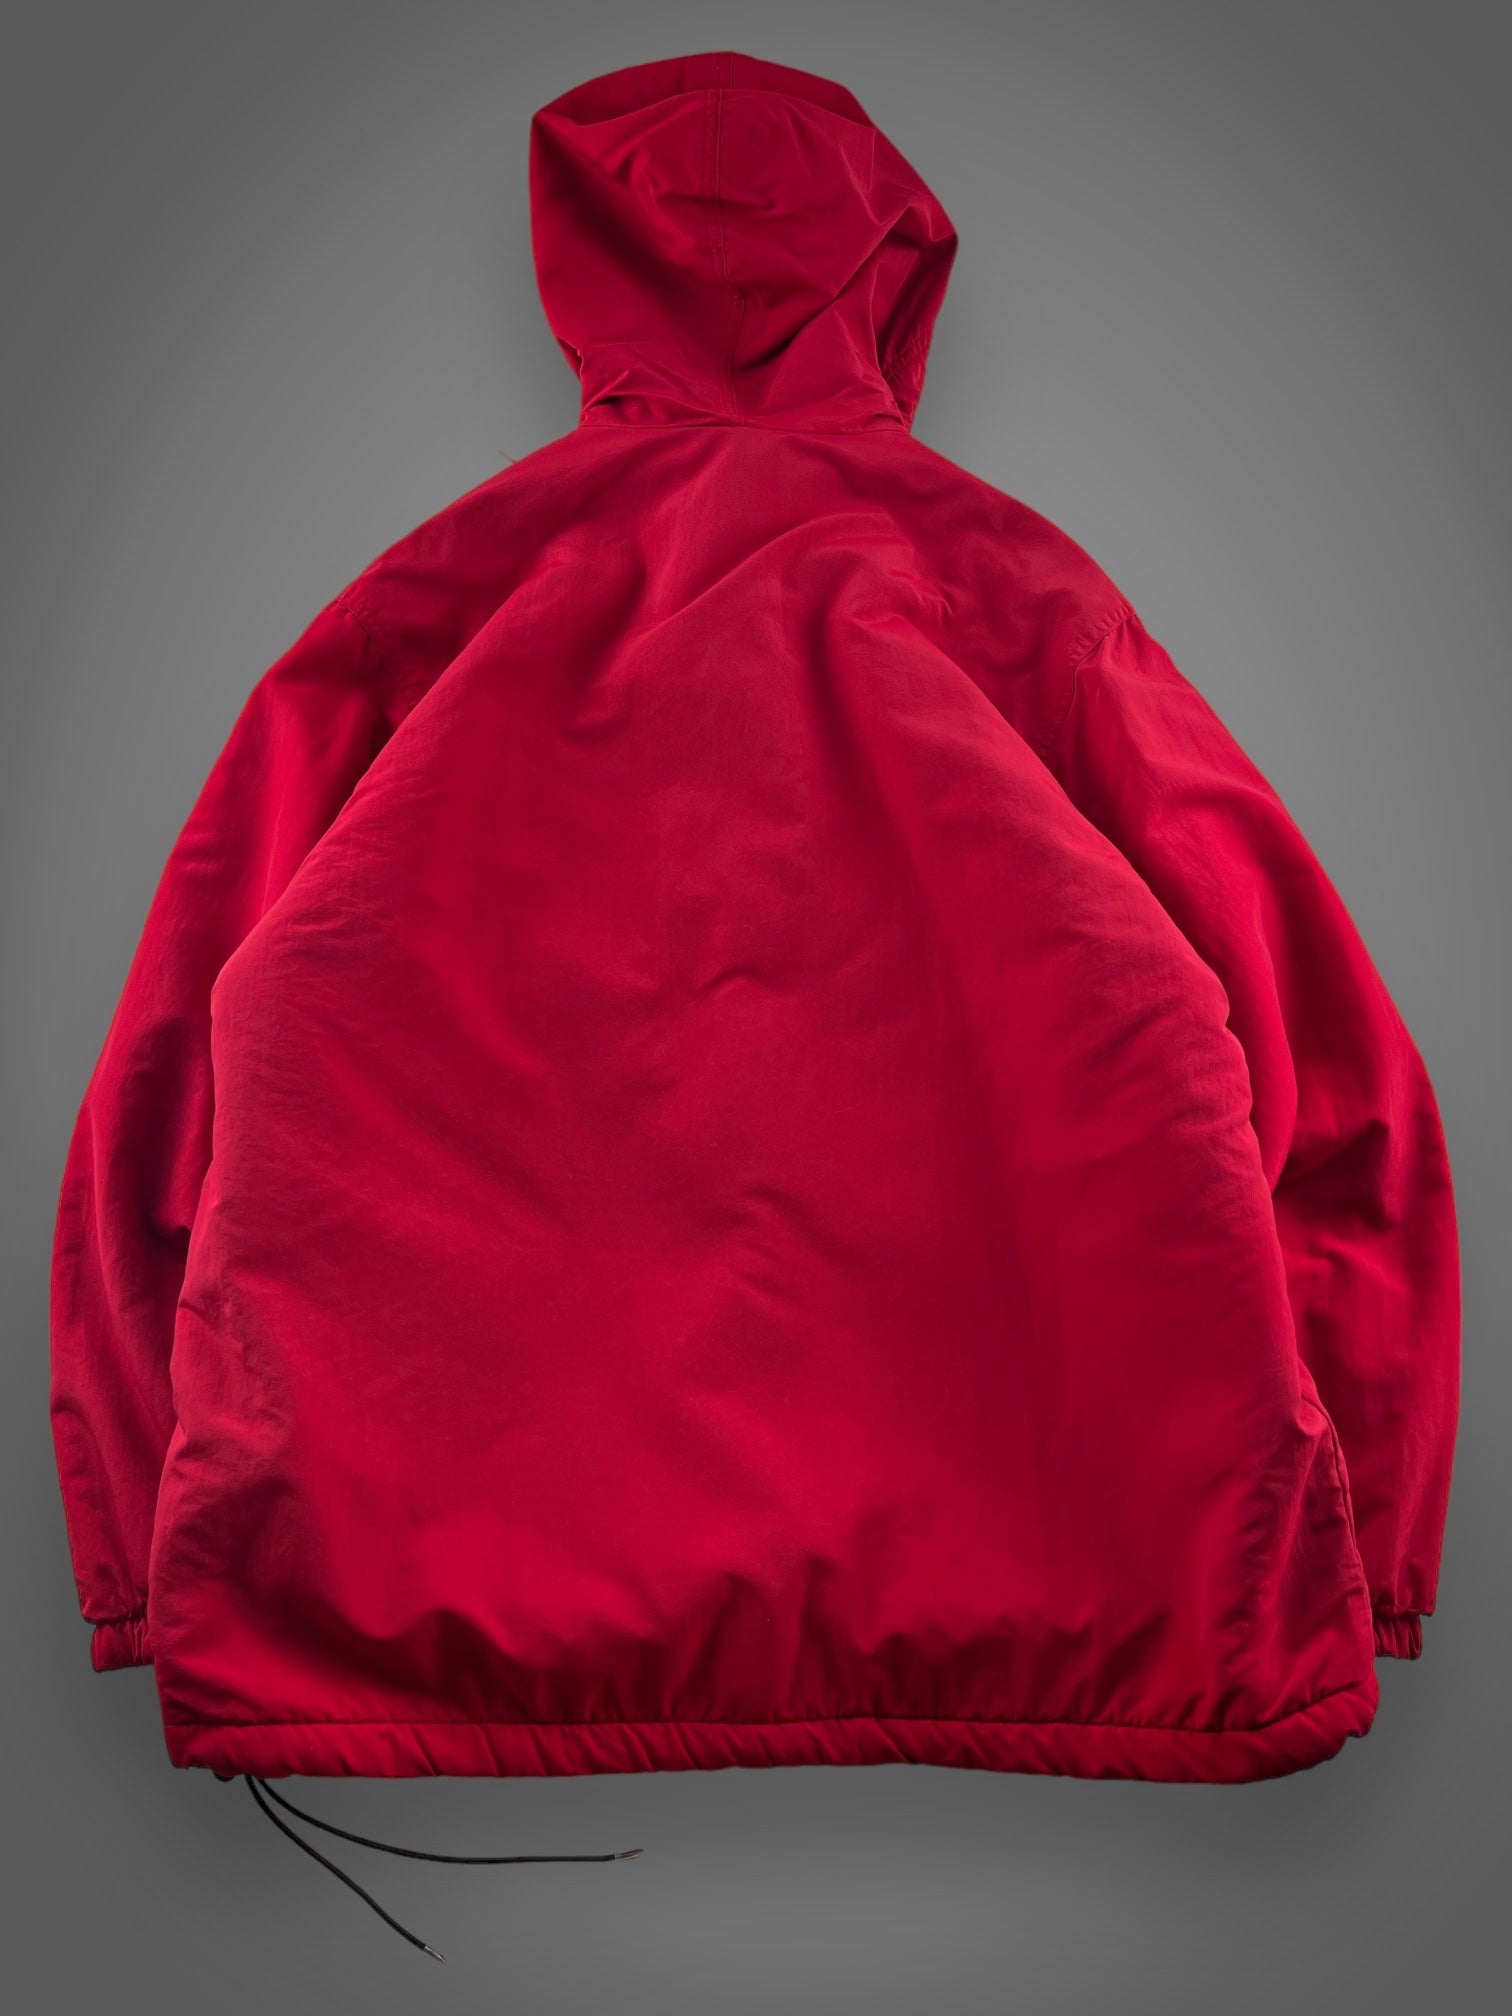 90s JCREW fleece lined hooded pullover jacket fits XL